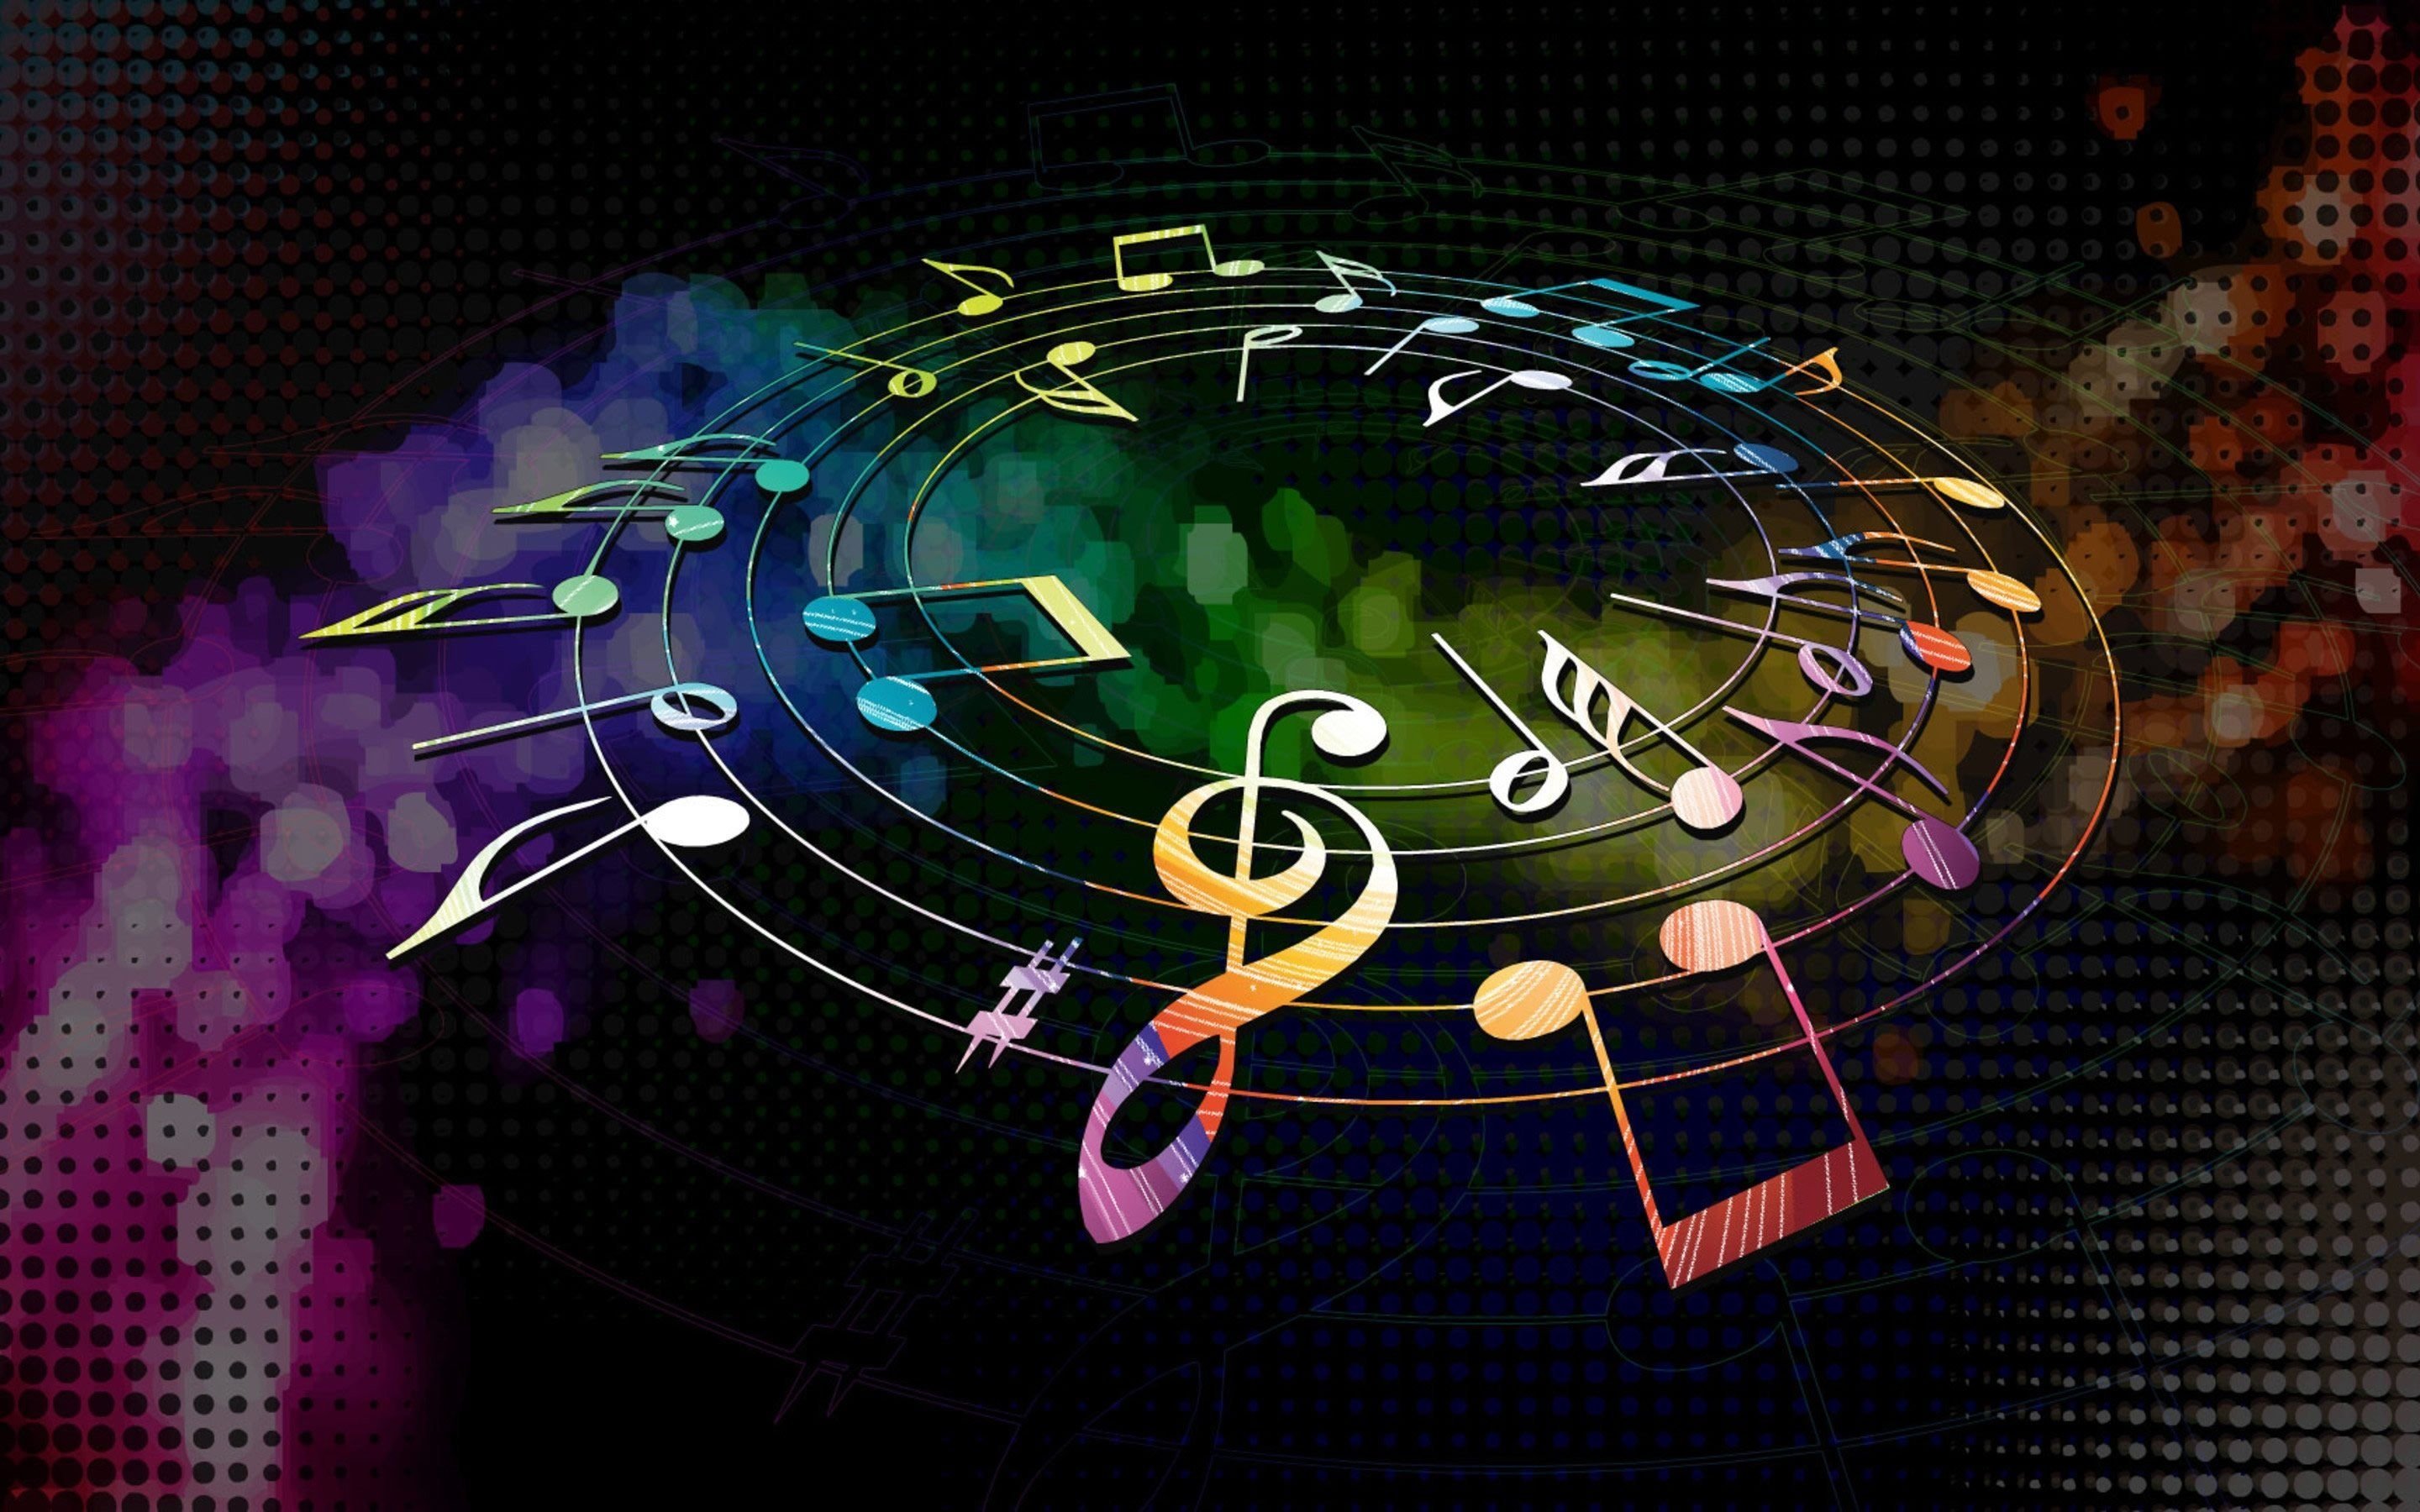 Musica que musica. Музыкальный фон. Музыкальная абстракция. Музыкальные обои. Картинки с музыкальной тематикой.